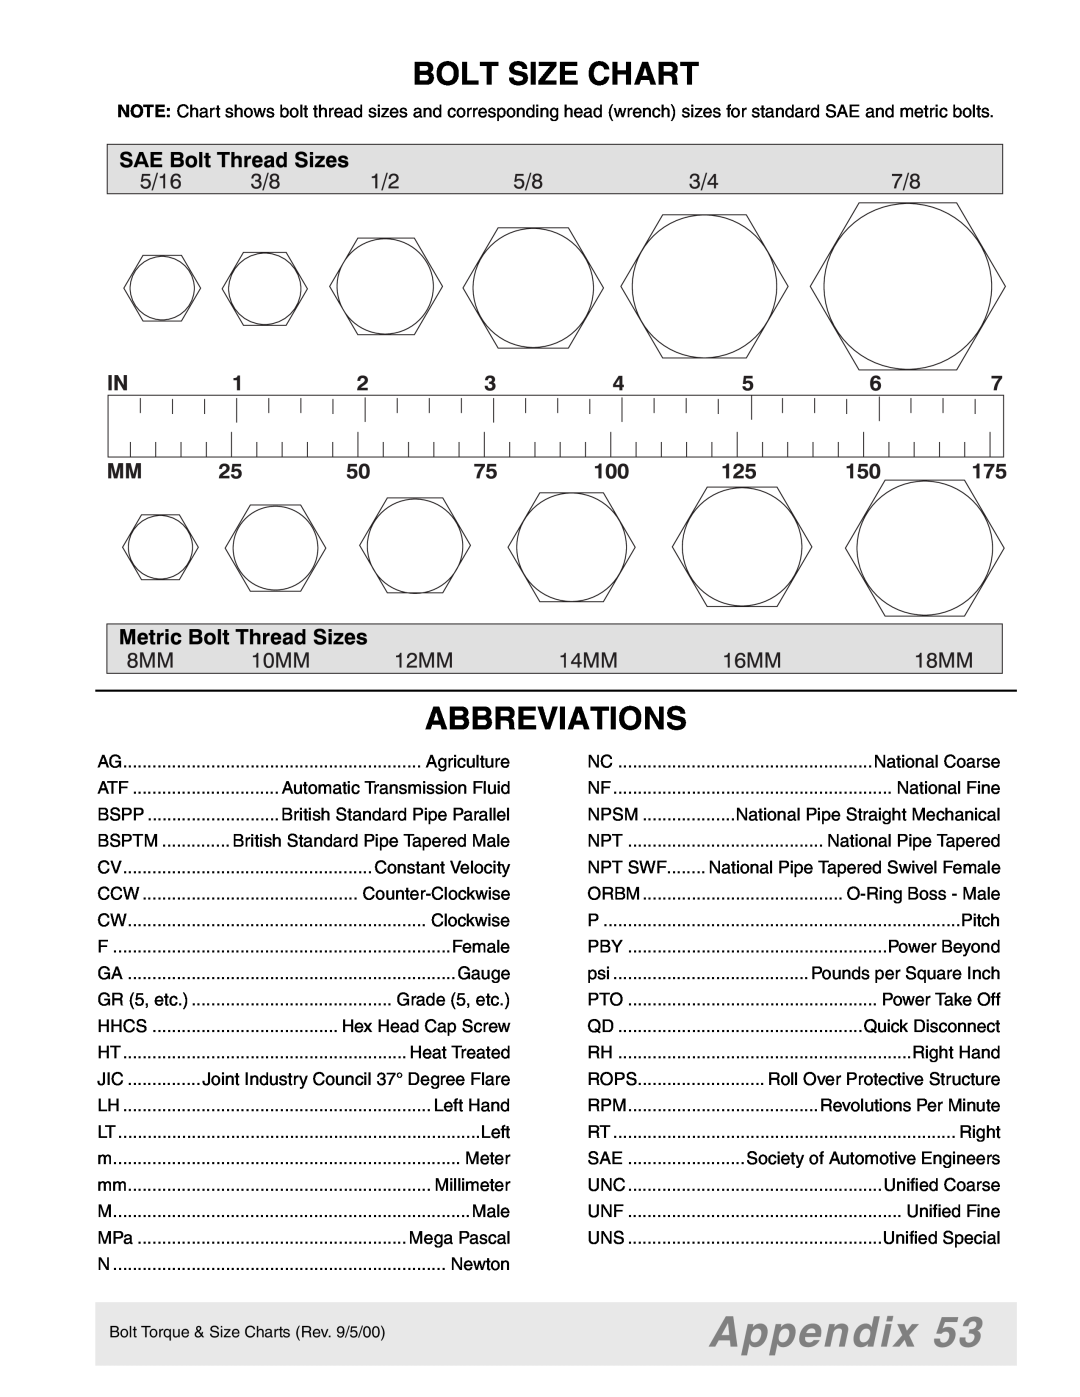 Woods Equipment 7000, 7192, 7194, 7195, 7200, 7205 manual Appendix, Bolt Size Chart, Abbreviations 